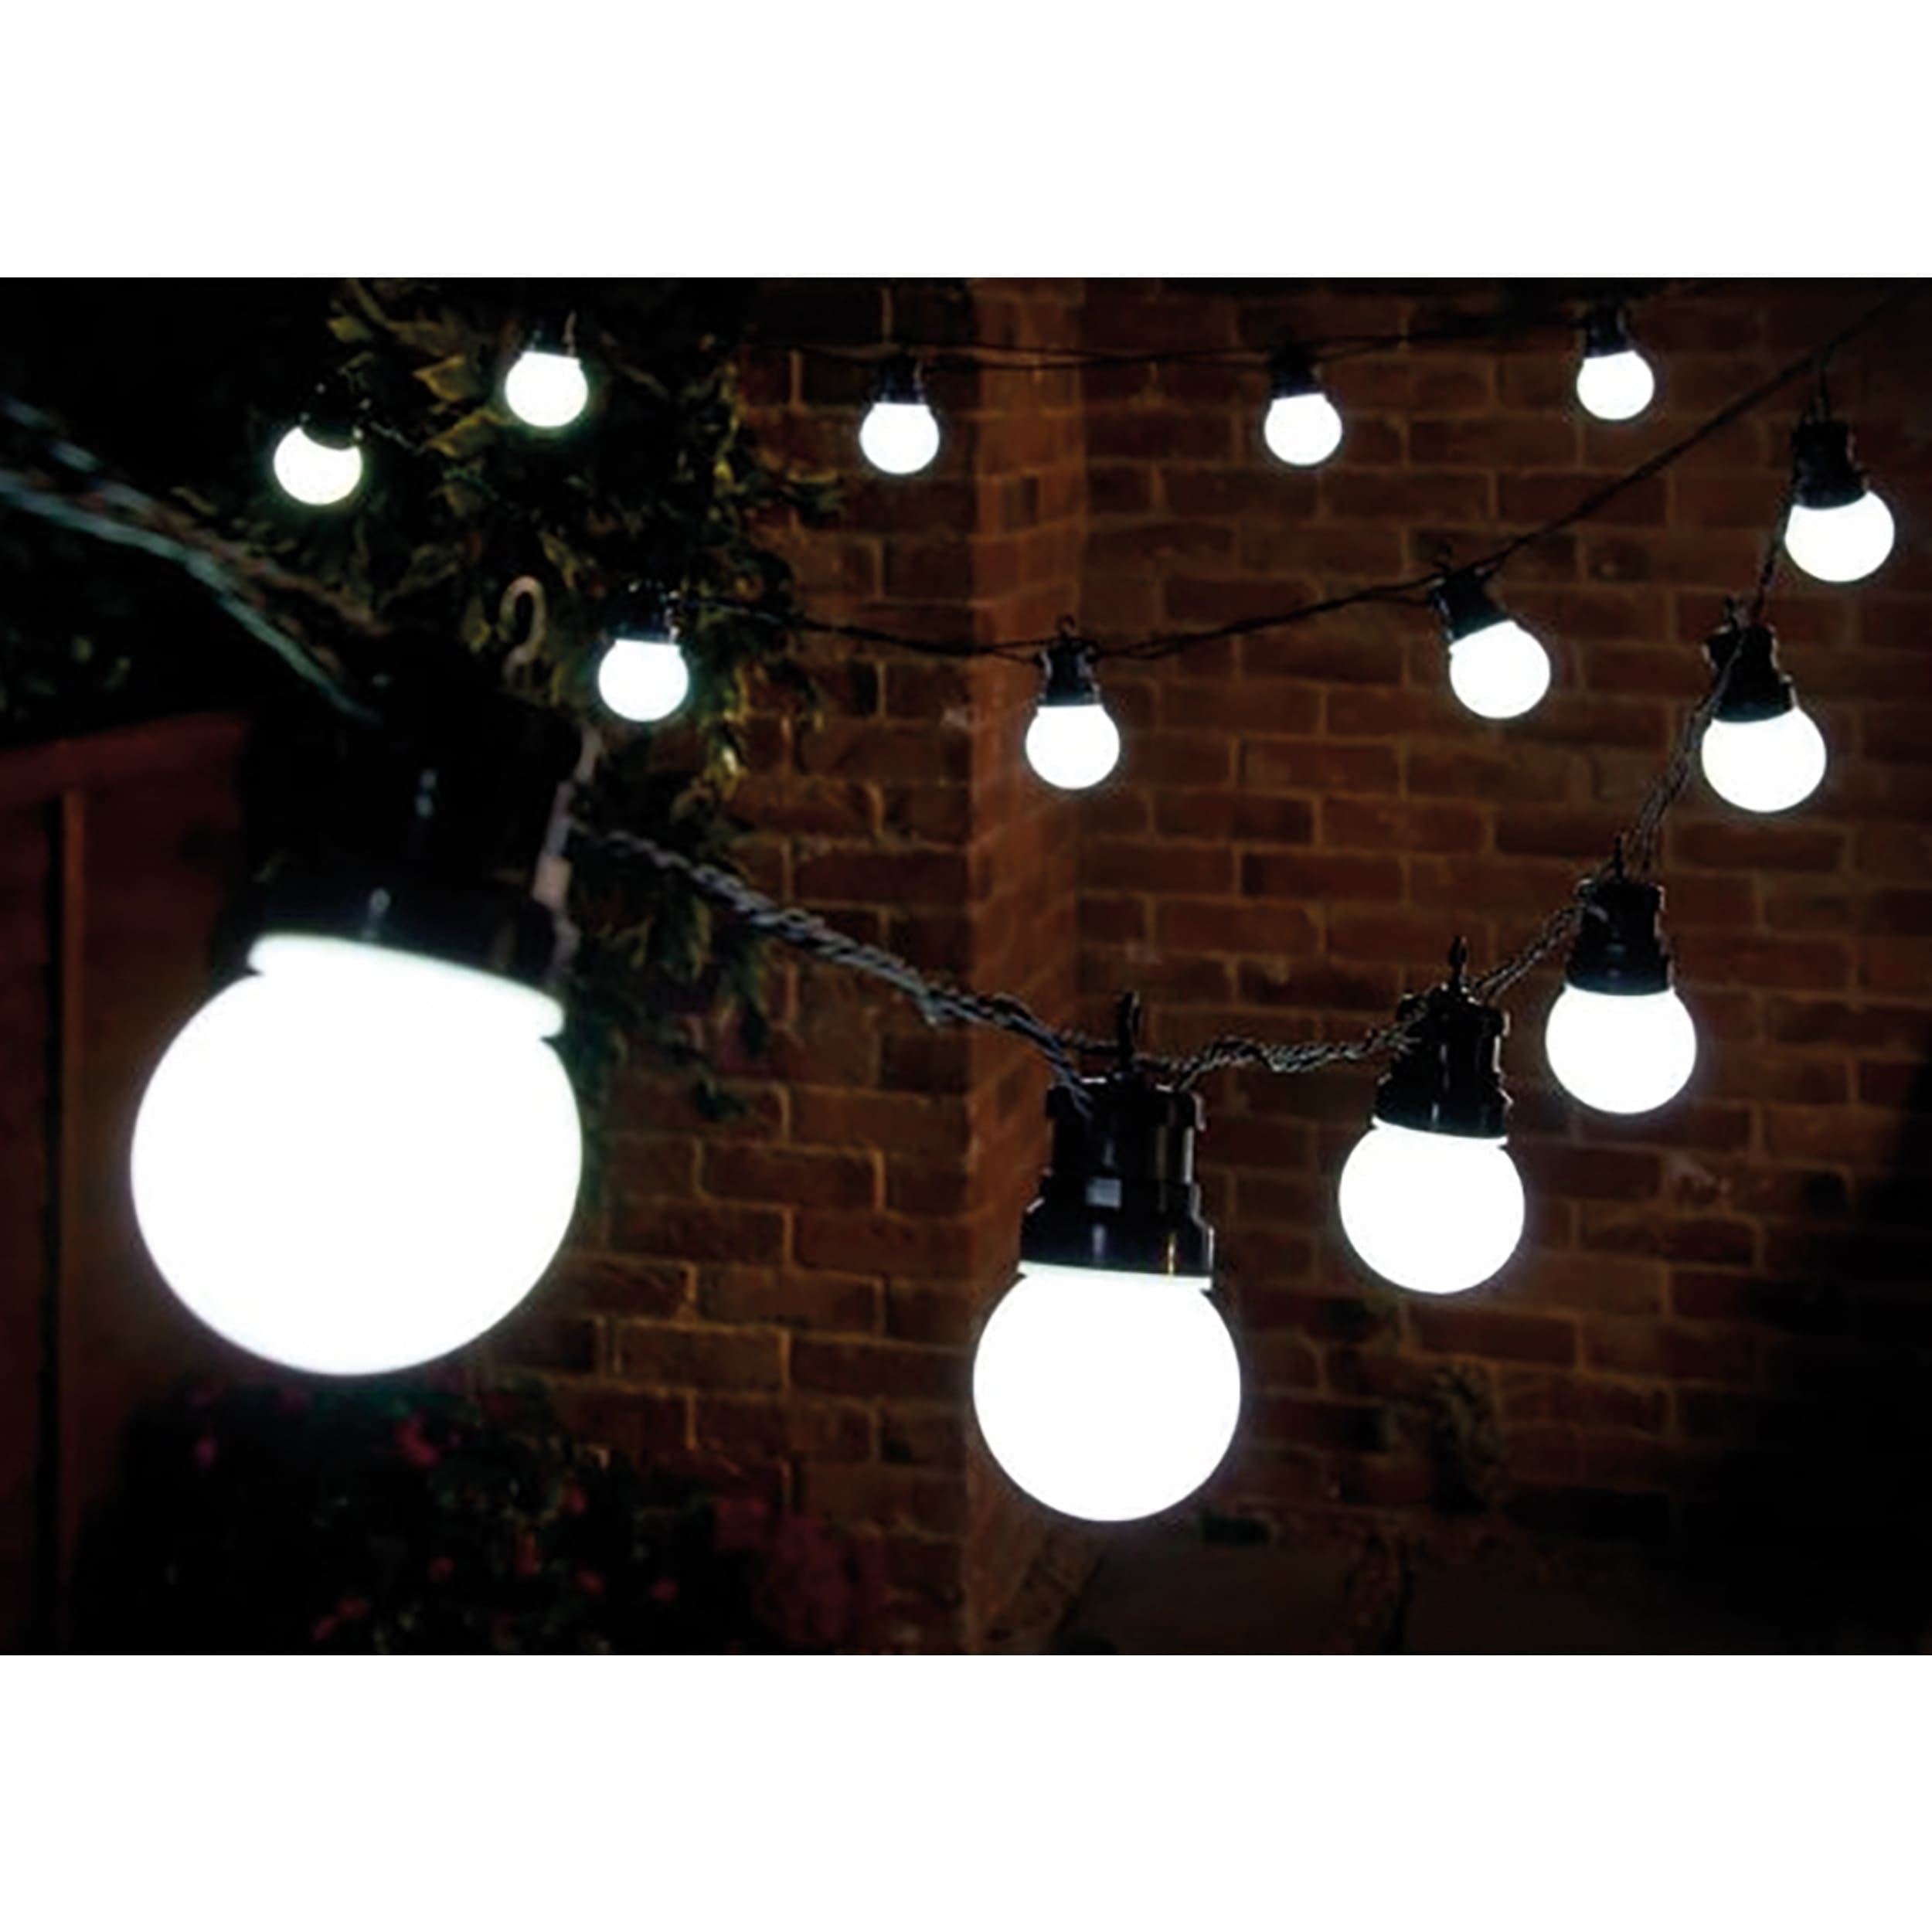 Girlanden-Lichterkette 24 Glühlampen 3 m